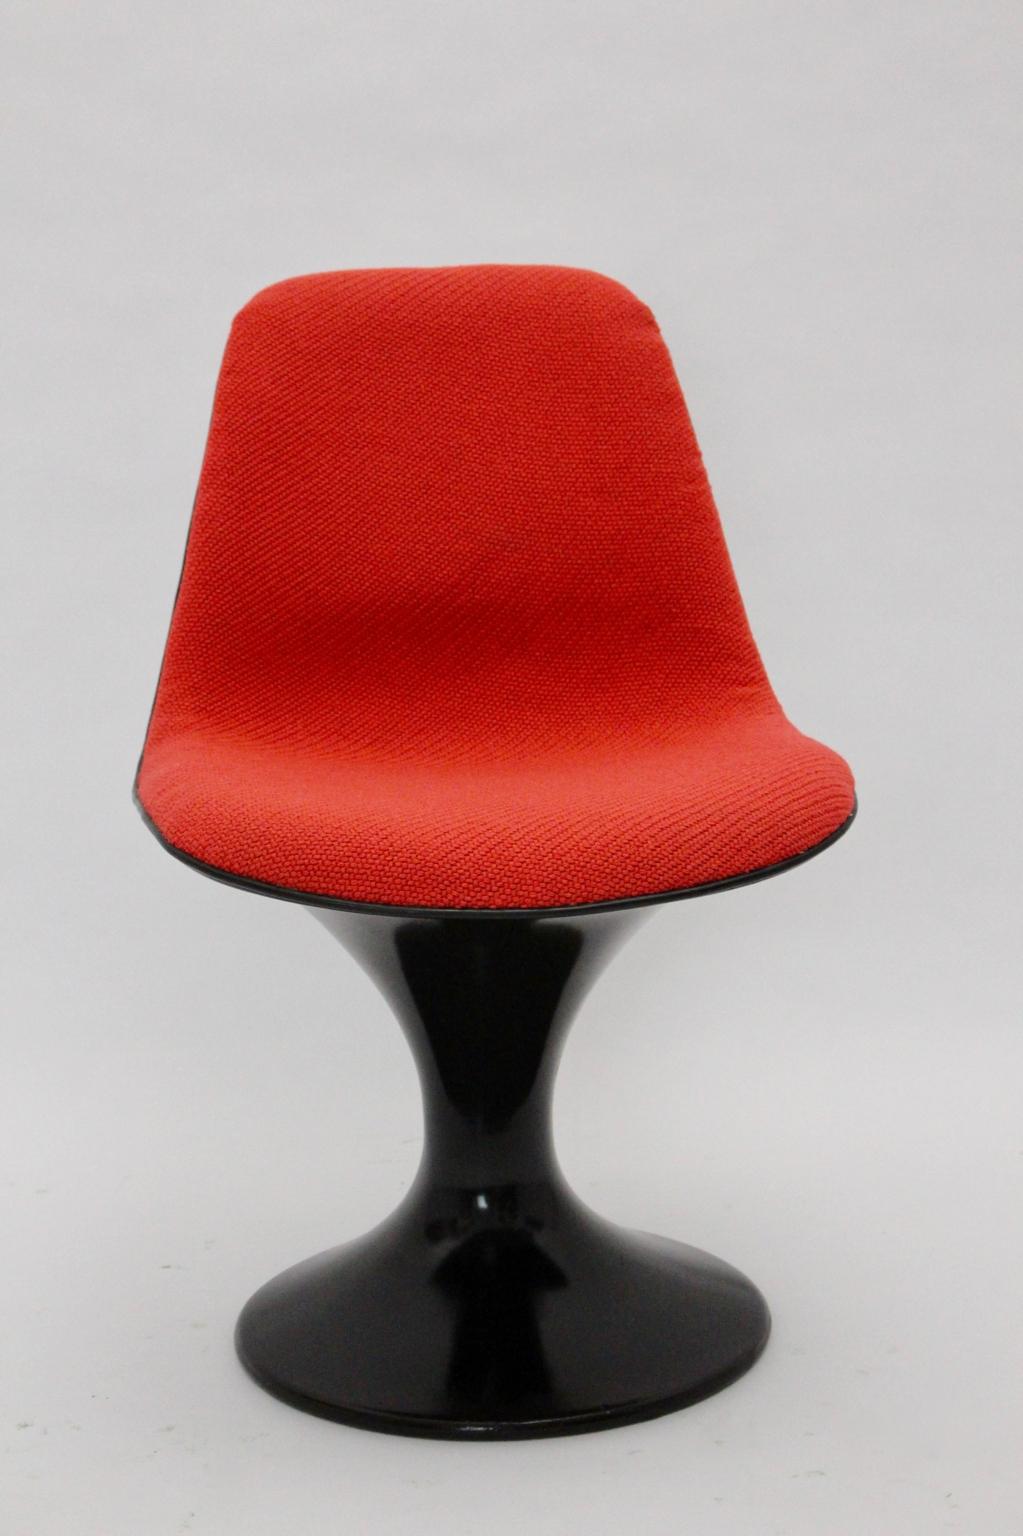 Vintage-Stuhl im Weltraumzeitalter, entworfen von Markus Farner und Walter Grunder um 1970 und ausgeführt von Herman Miller Zeeland, USA.
Dieser Stuhl hat ein braunes Kunststoffgestell und eine neu bezogene Sitzfläche mit einem hochwertigen roten